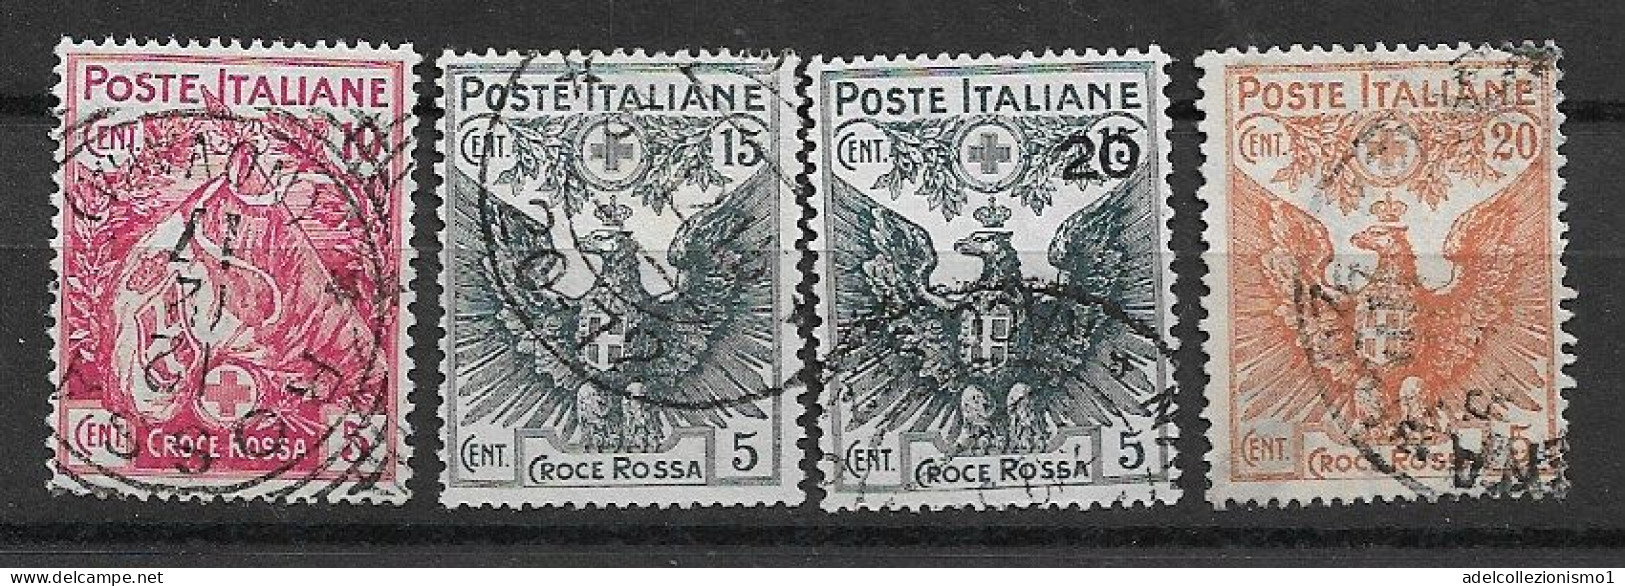 49549) Pro Croce Rossa - 1915/1916  -SERIE COMPLETA USATA - Publicity